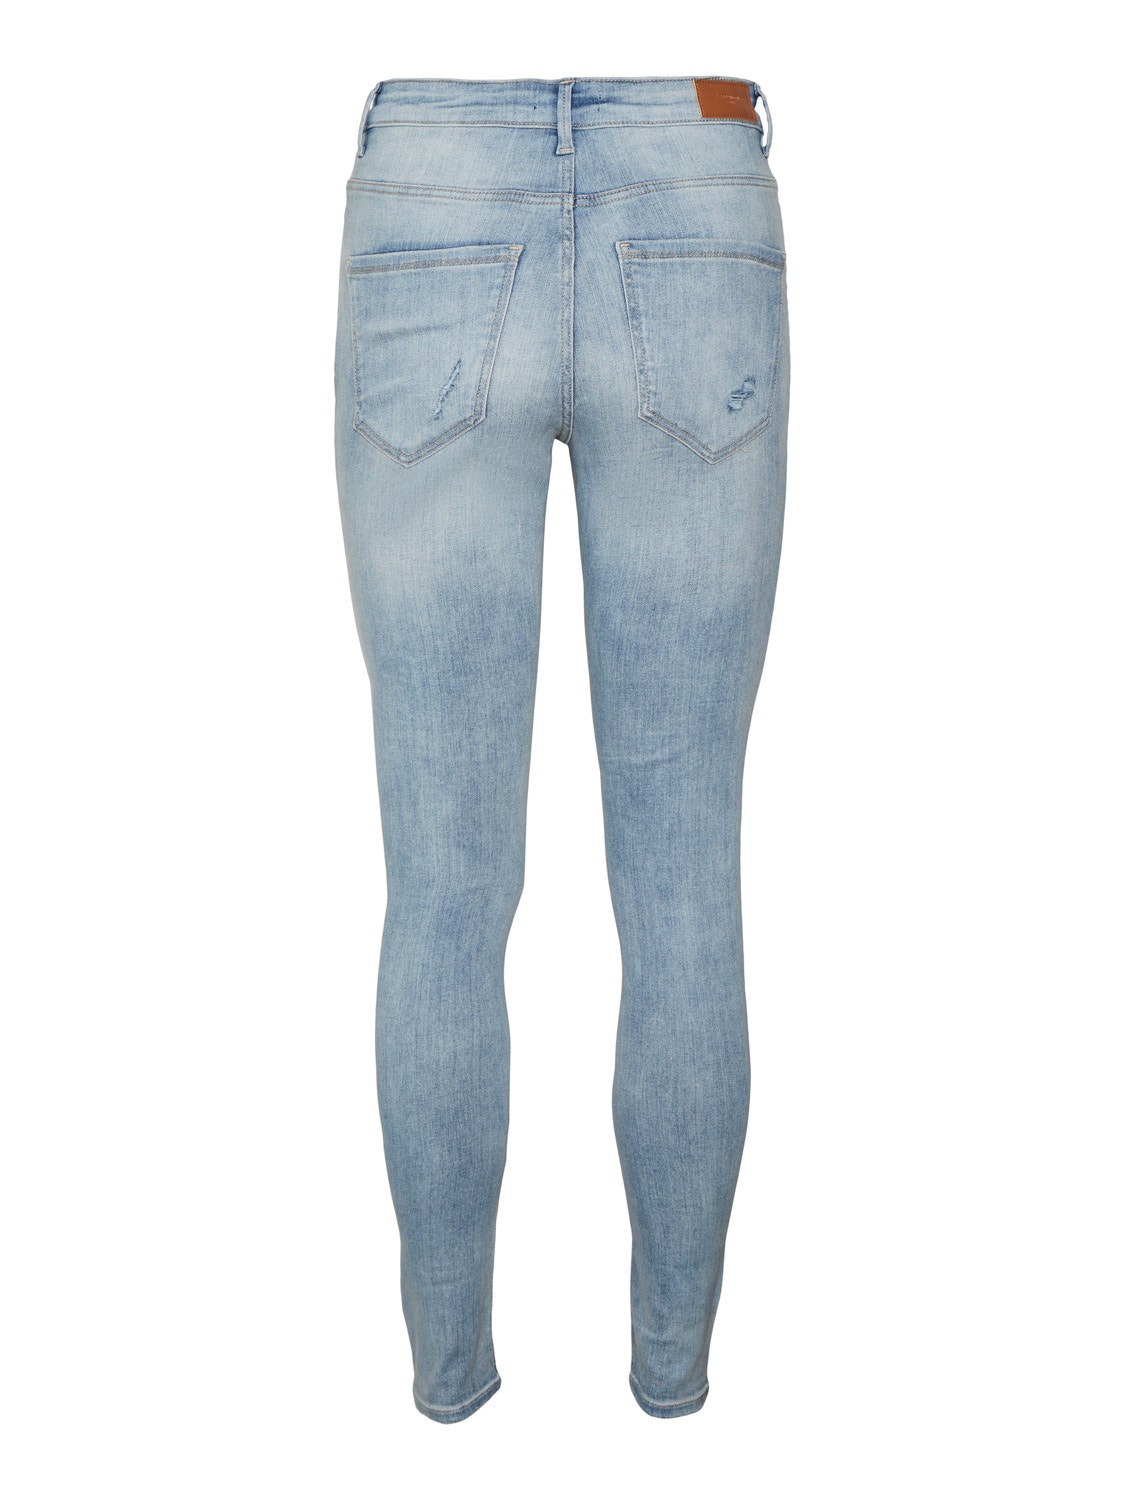 VMSOPHIA High | Light Moda® Vero Jeans rise Blue 